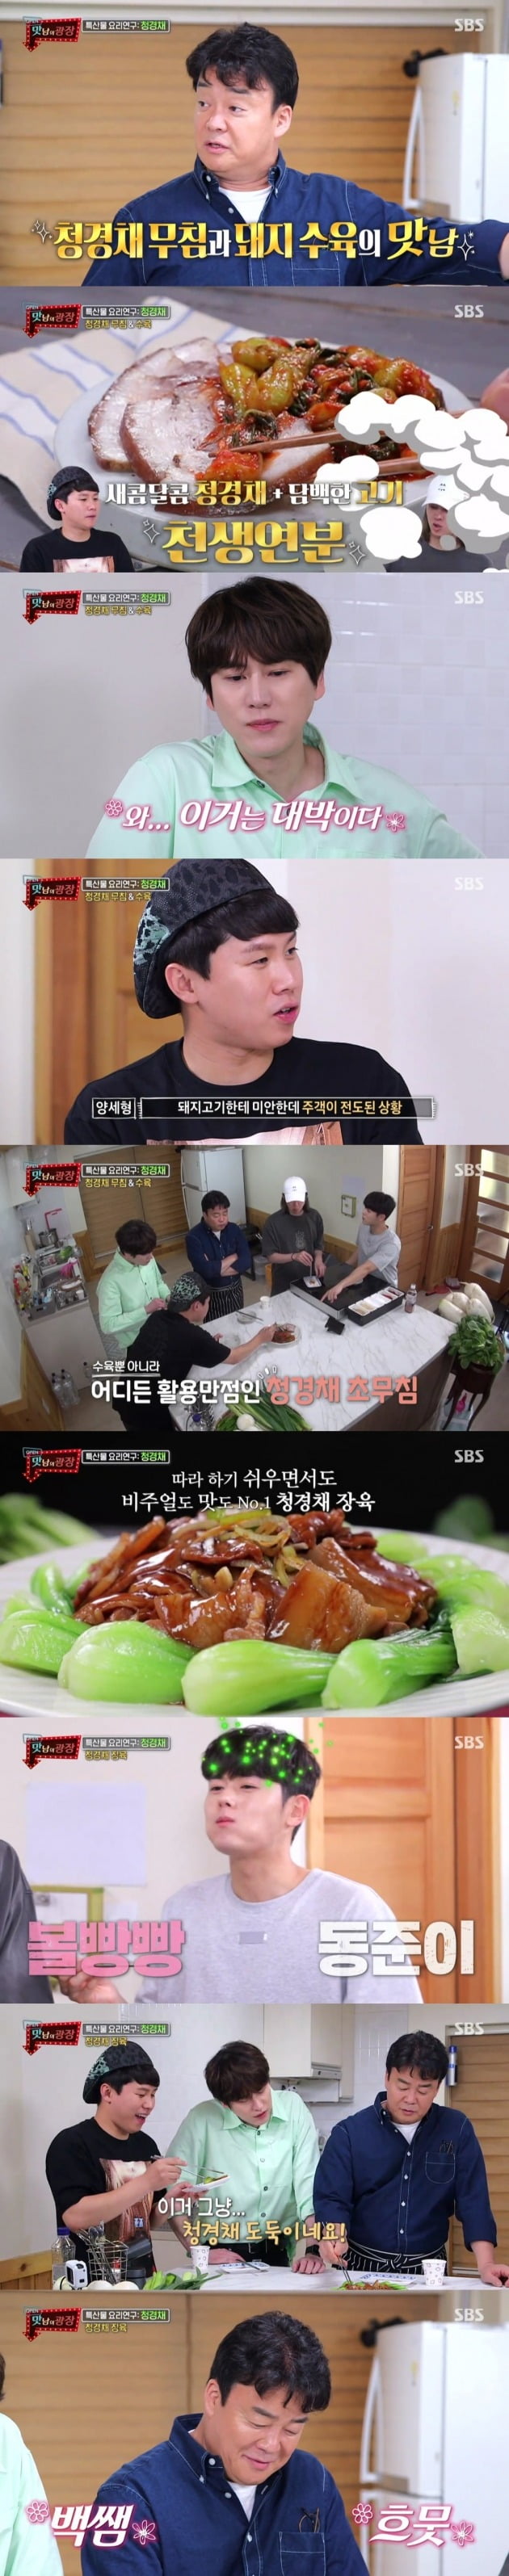 '맛남의 광장' 멤버들이 맛있는 청경채 요리를 즐겼다. / 사진제공=SBS